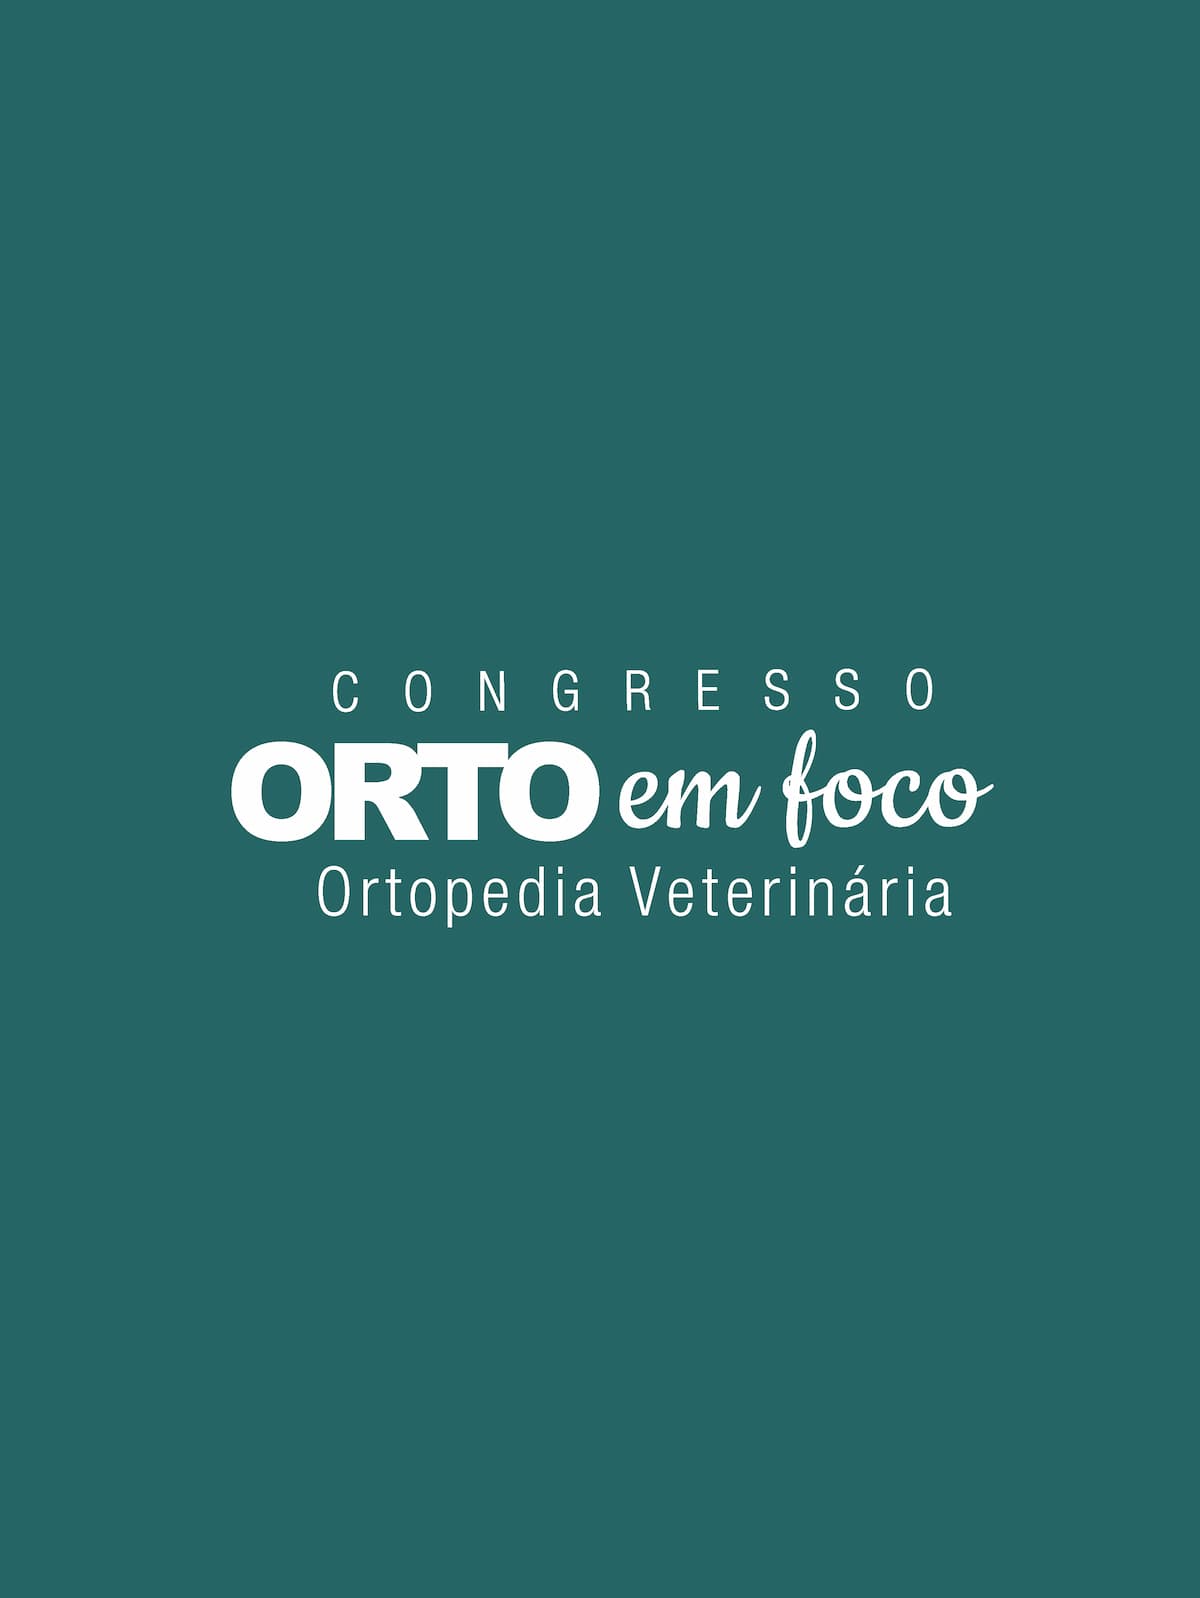 Congresso Orto em Foco Veterinários